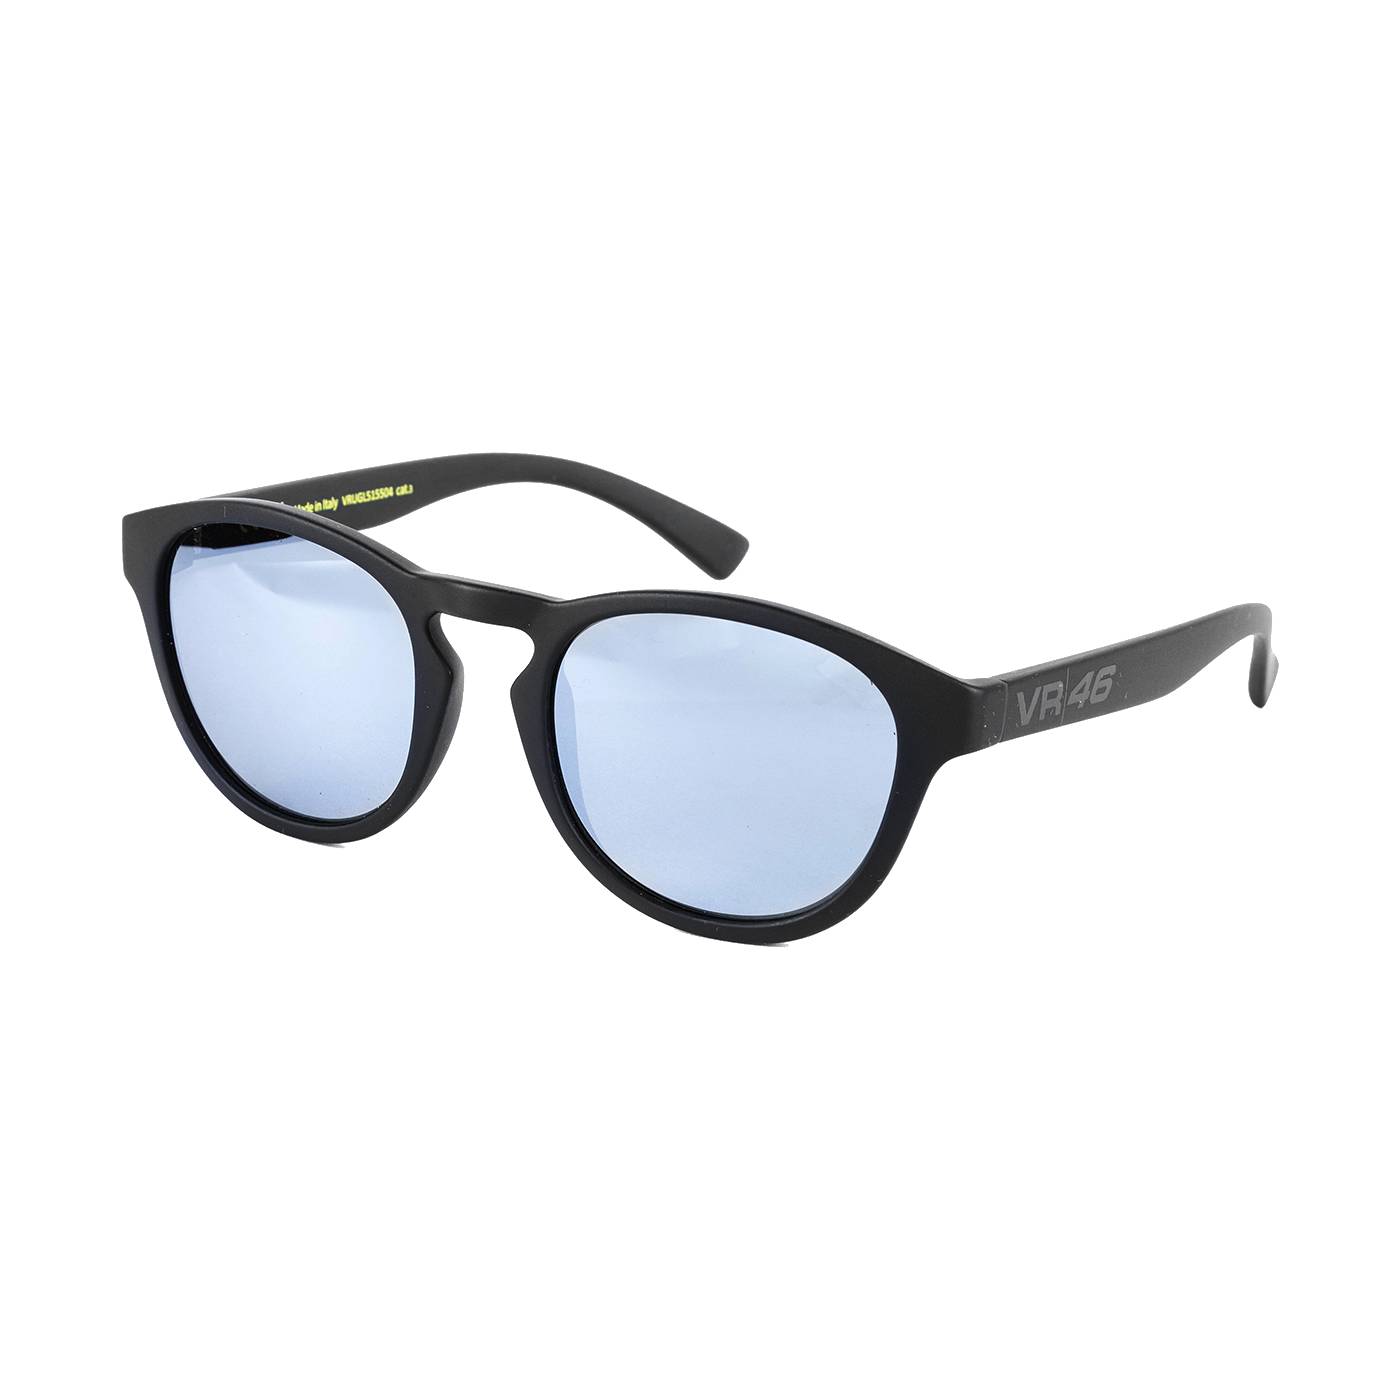 Valentino Rossi Sonnenbrille "Sprint" - schwarz